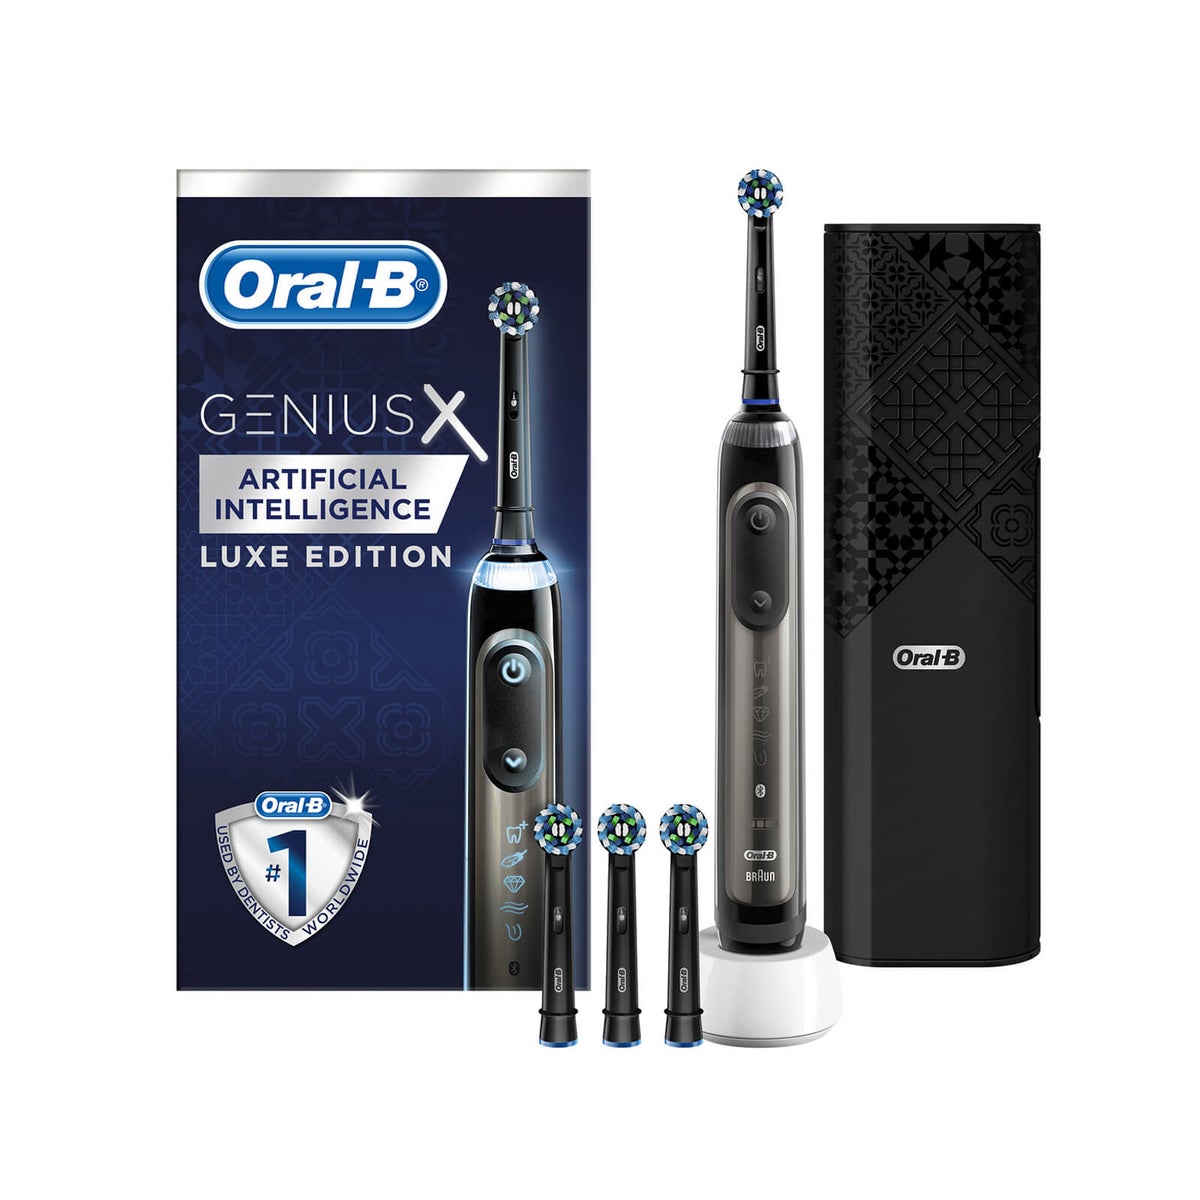 Oral-B Genius X Luxe Edition